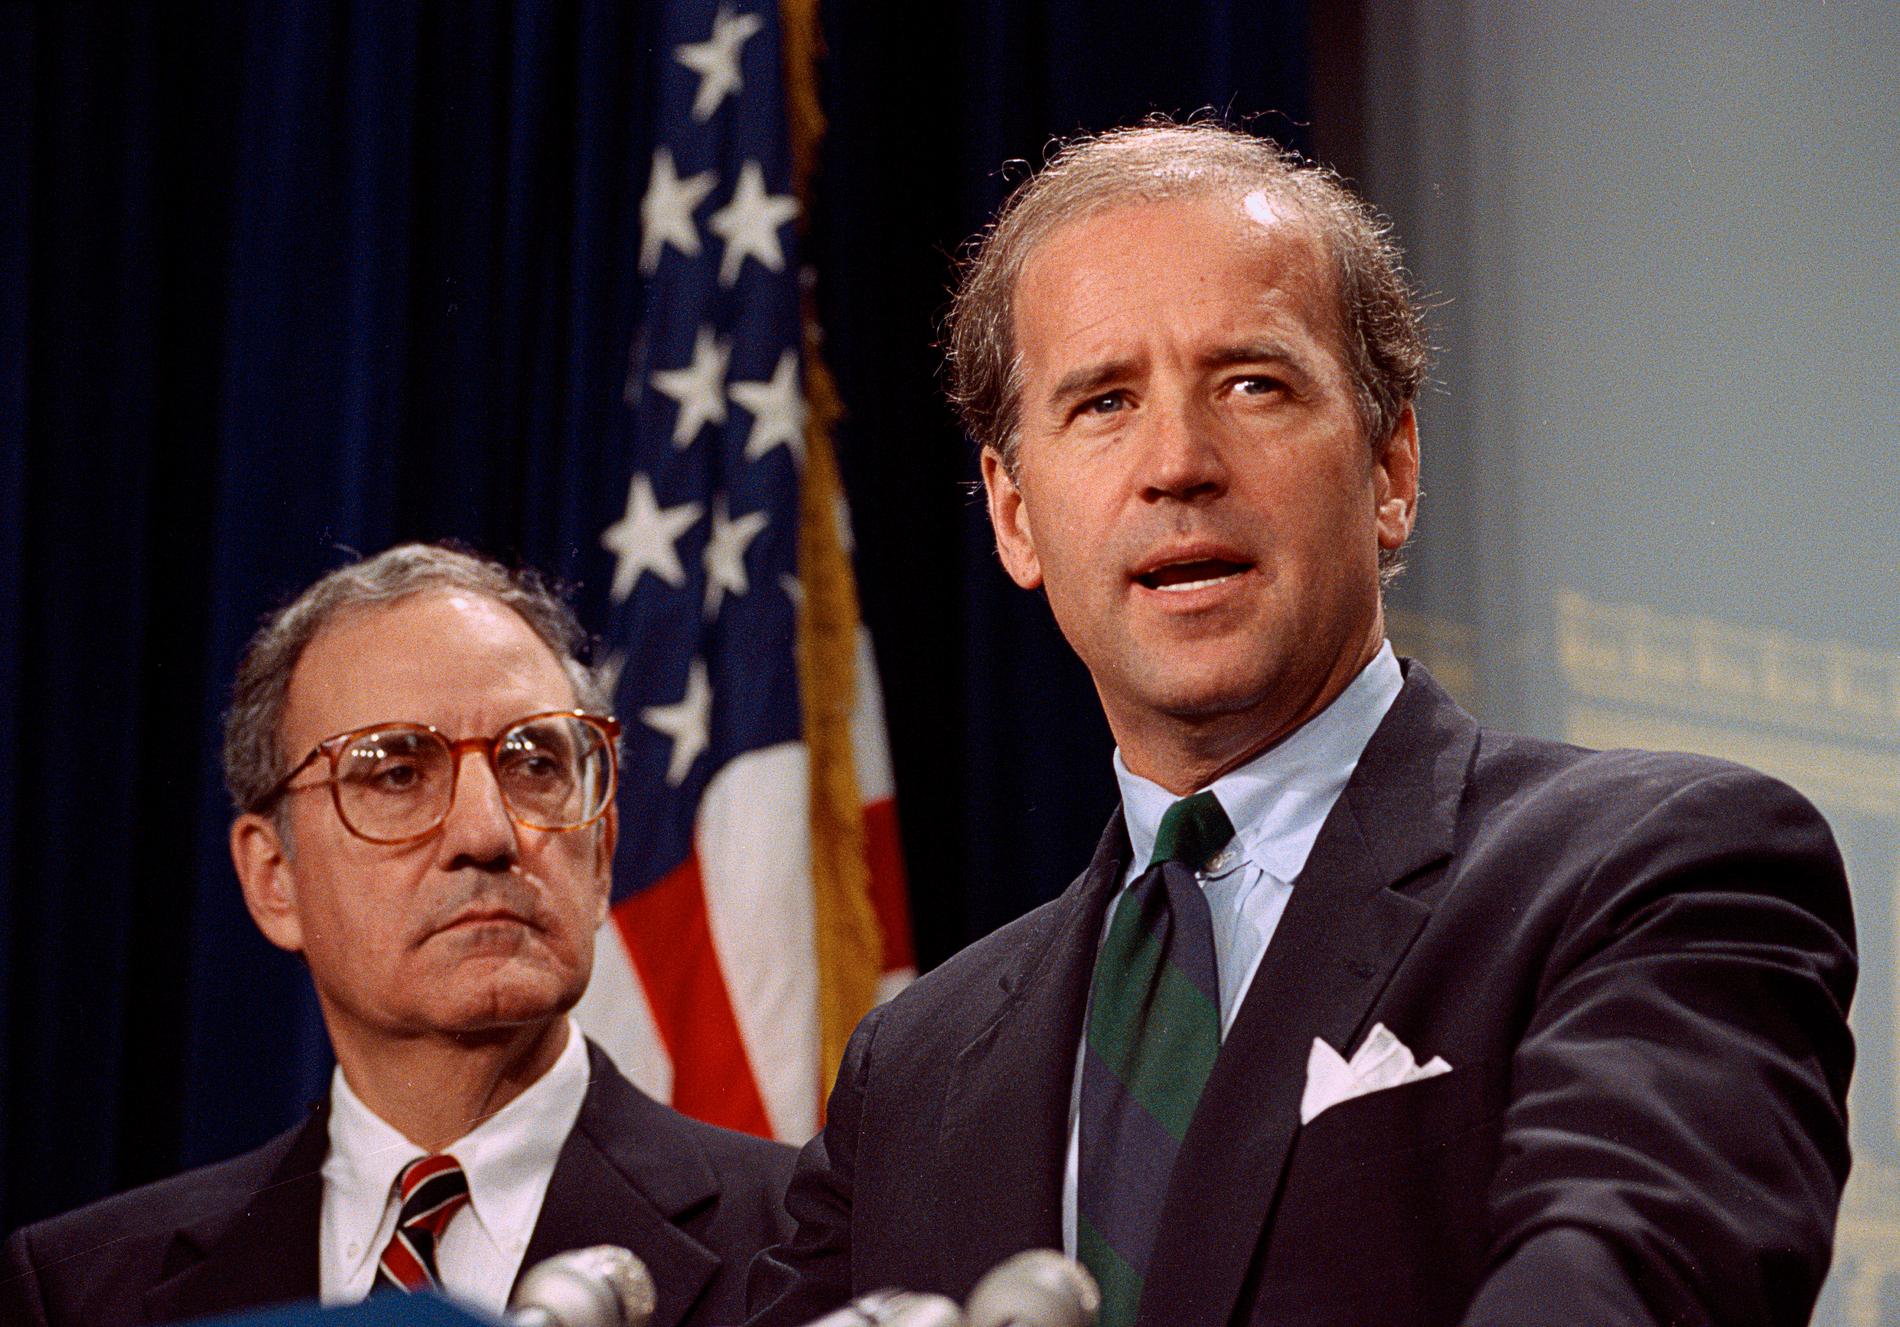 Övergreppet ska ha skett 1993 när Joe Biden var senator.